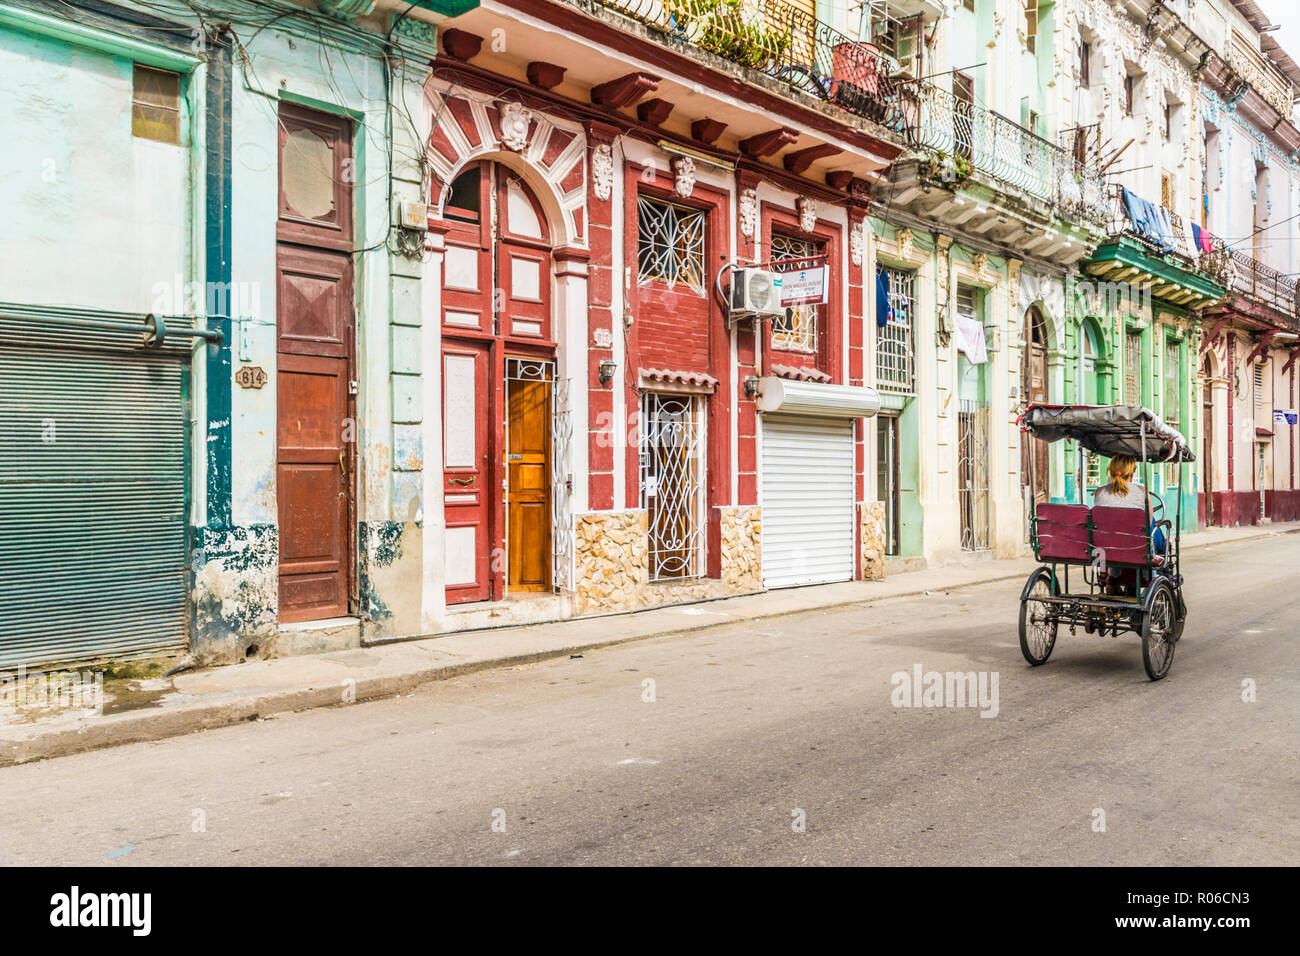 Ein vintage Cycle rickshaw vorbei an schönen lokalen Architektur in Havanna, Kuba, Karibik, Karibik, Zentral- und Lateinamerika Stockfoto